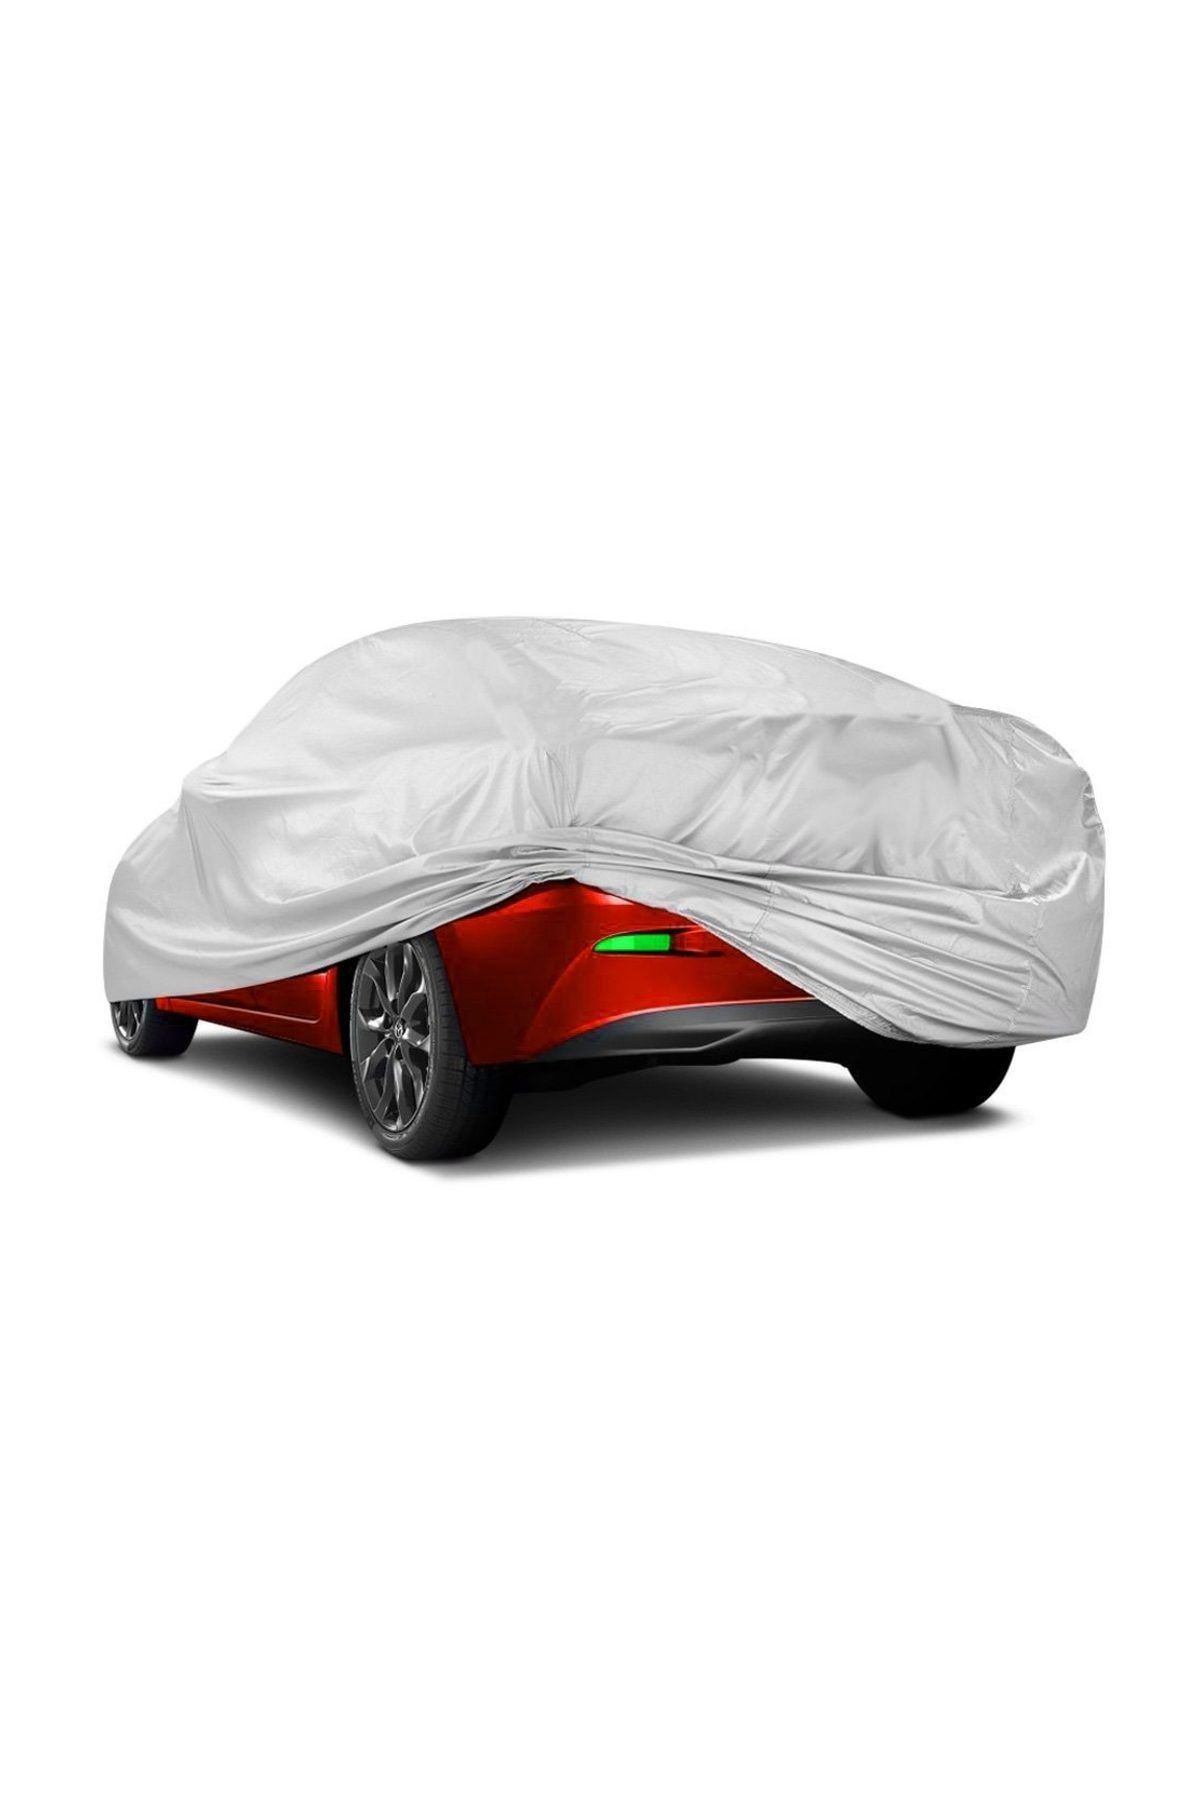 AutoEN CoverPlus Dacia Logan Sedan Auto Tarpaulin Car Tent - Gray